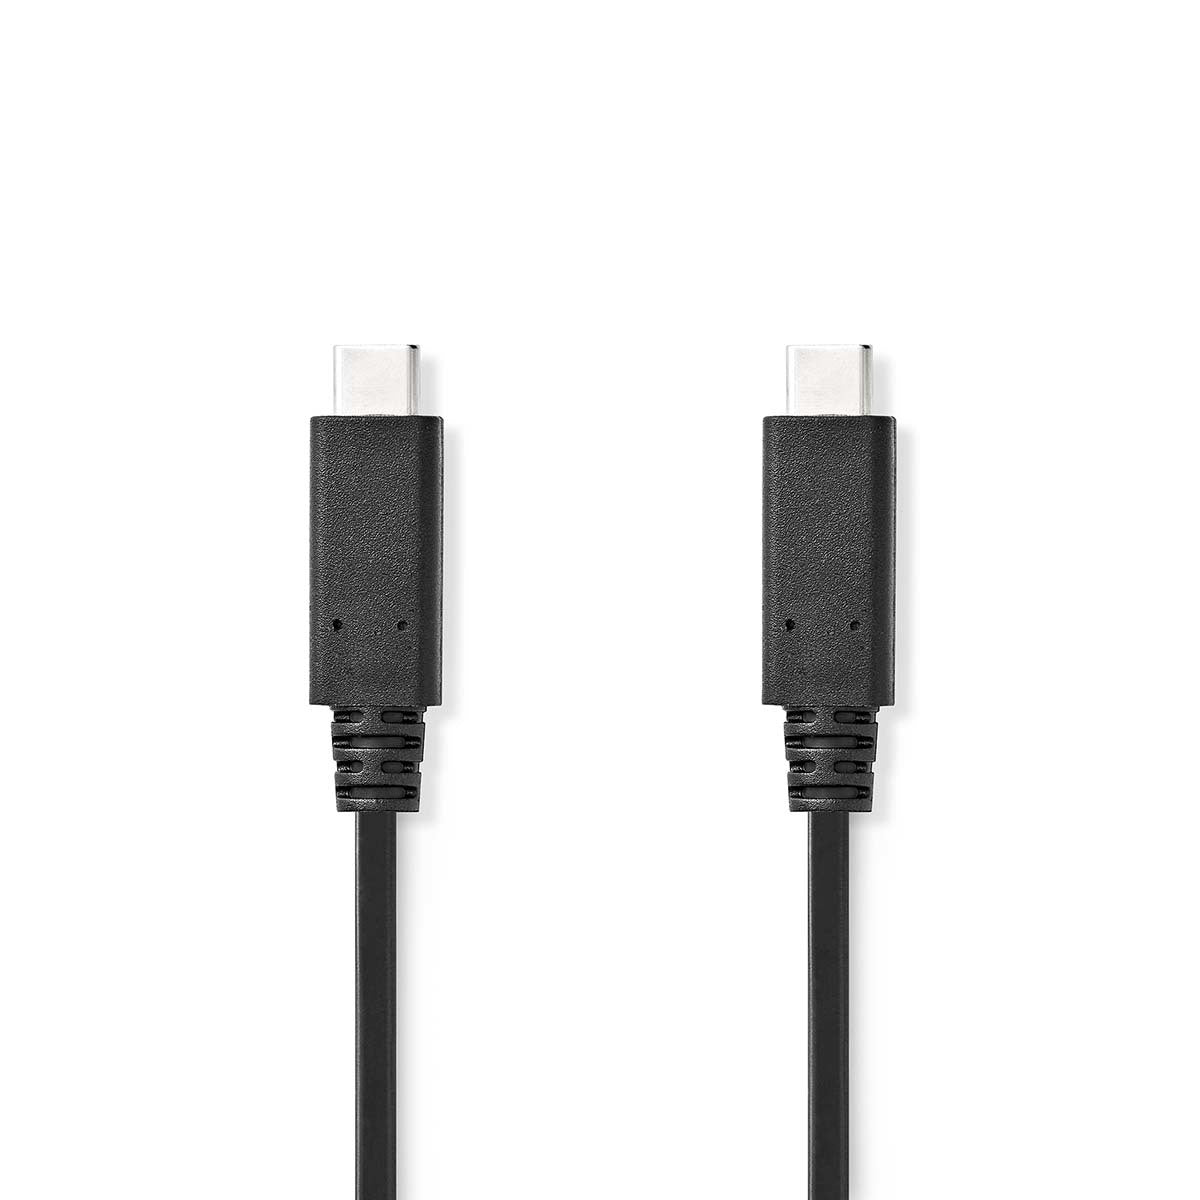 Nedis USB-C kabel van USB-C Male naar USB-C Male, lengte 1 meter